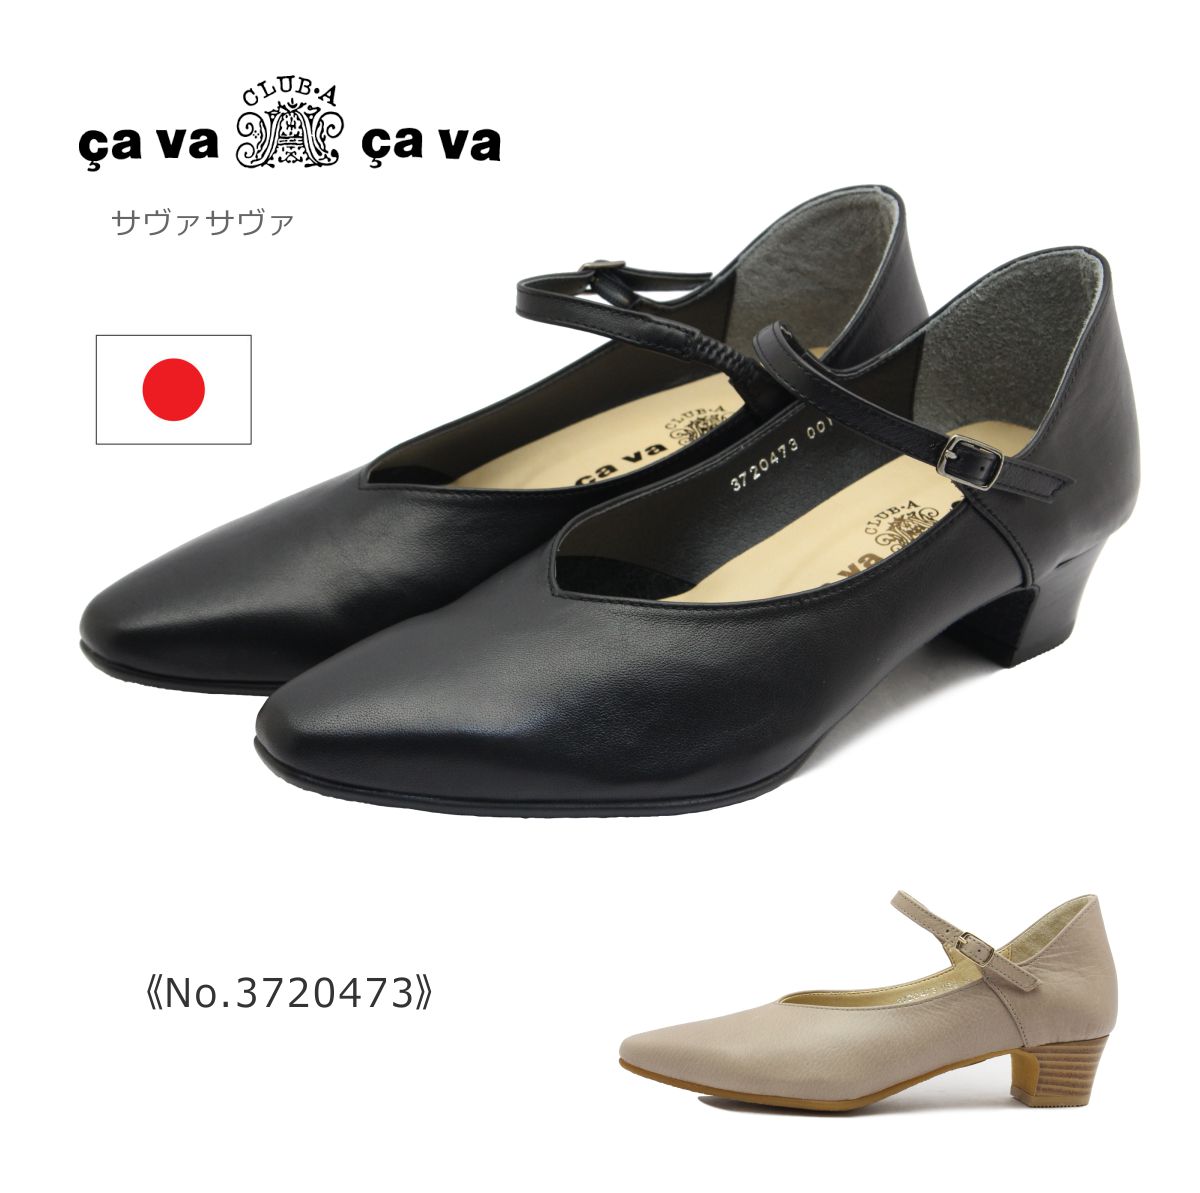 cavacava サヴァサヴァ サバサバ レディース 3720473 フラット ストラップ 本革 靴 黒 ブラック グレージュ